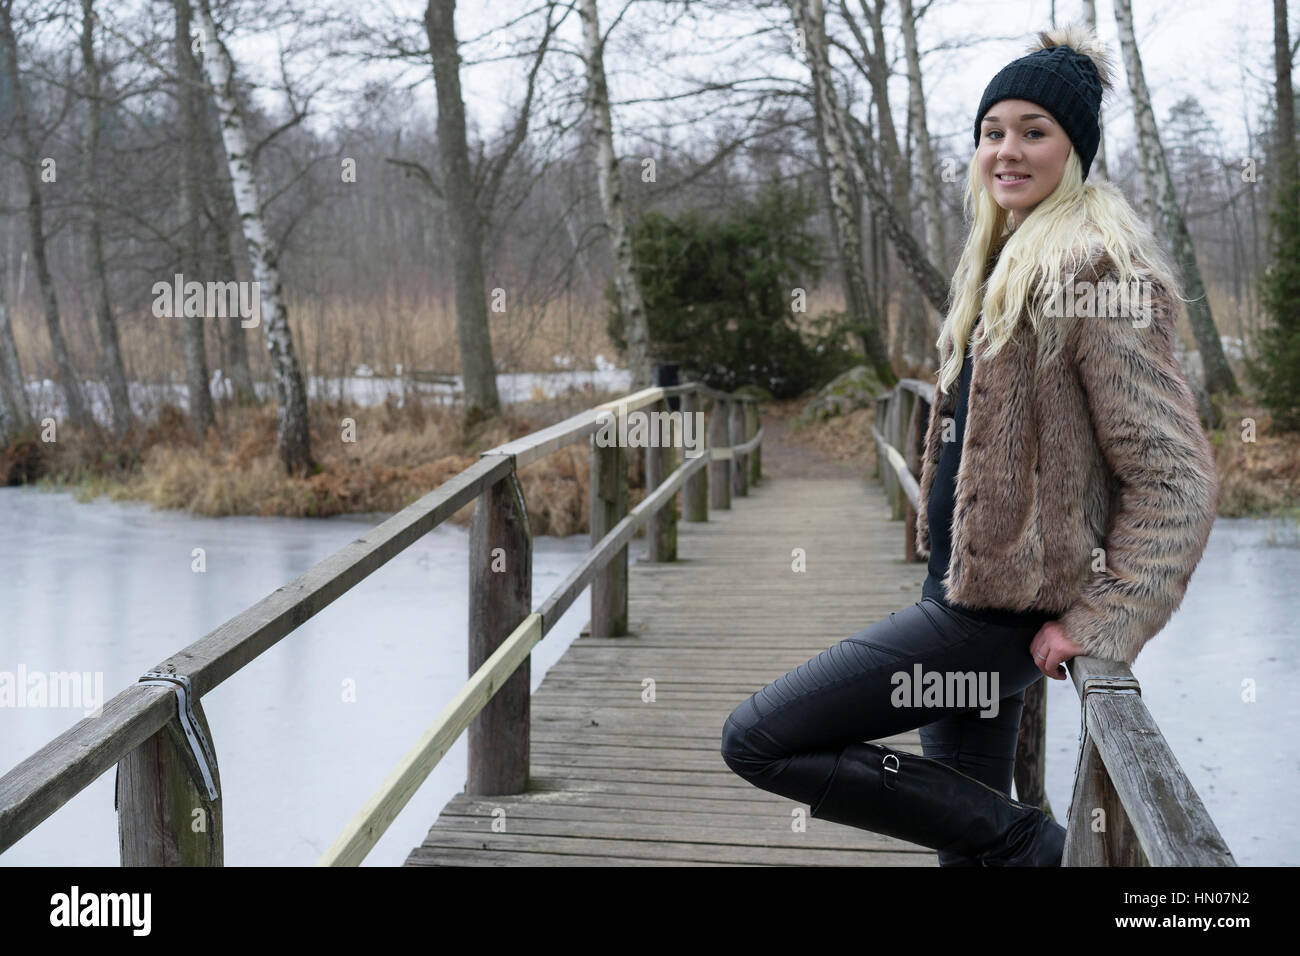 Schöne schwedische blonde Frau im schwarzen Kappe und schönes Outfit posiert auf Holzbrücke. Lächelnd, entspannt und glücklich. Stockfoto